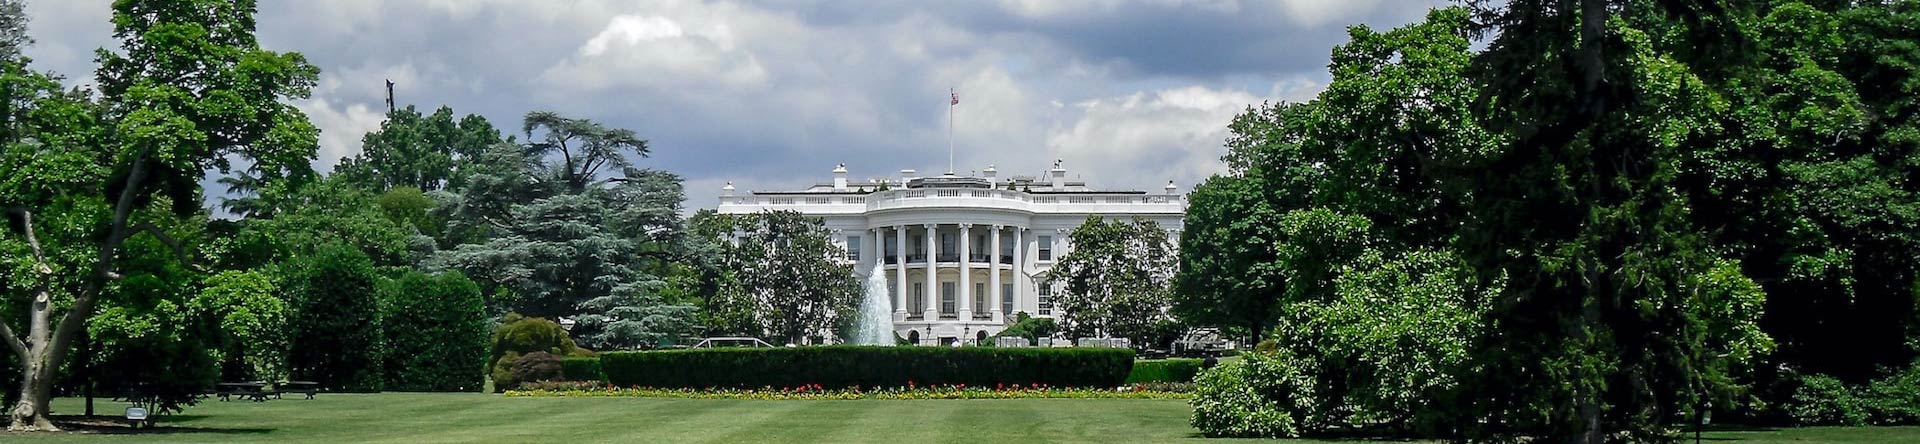 La Maison Blanche Washington D.C.